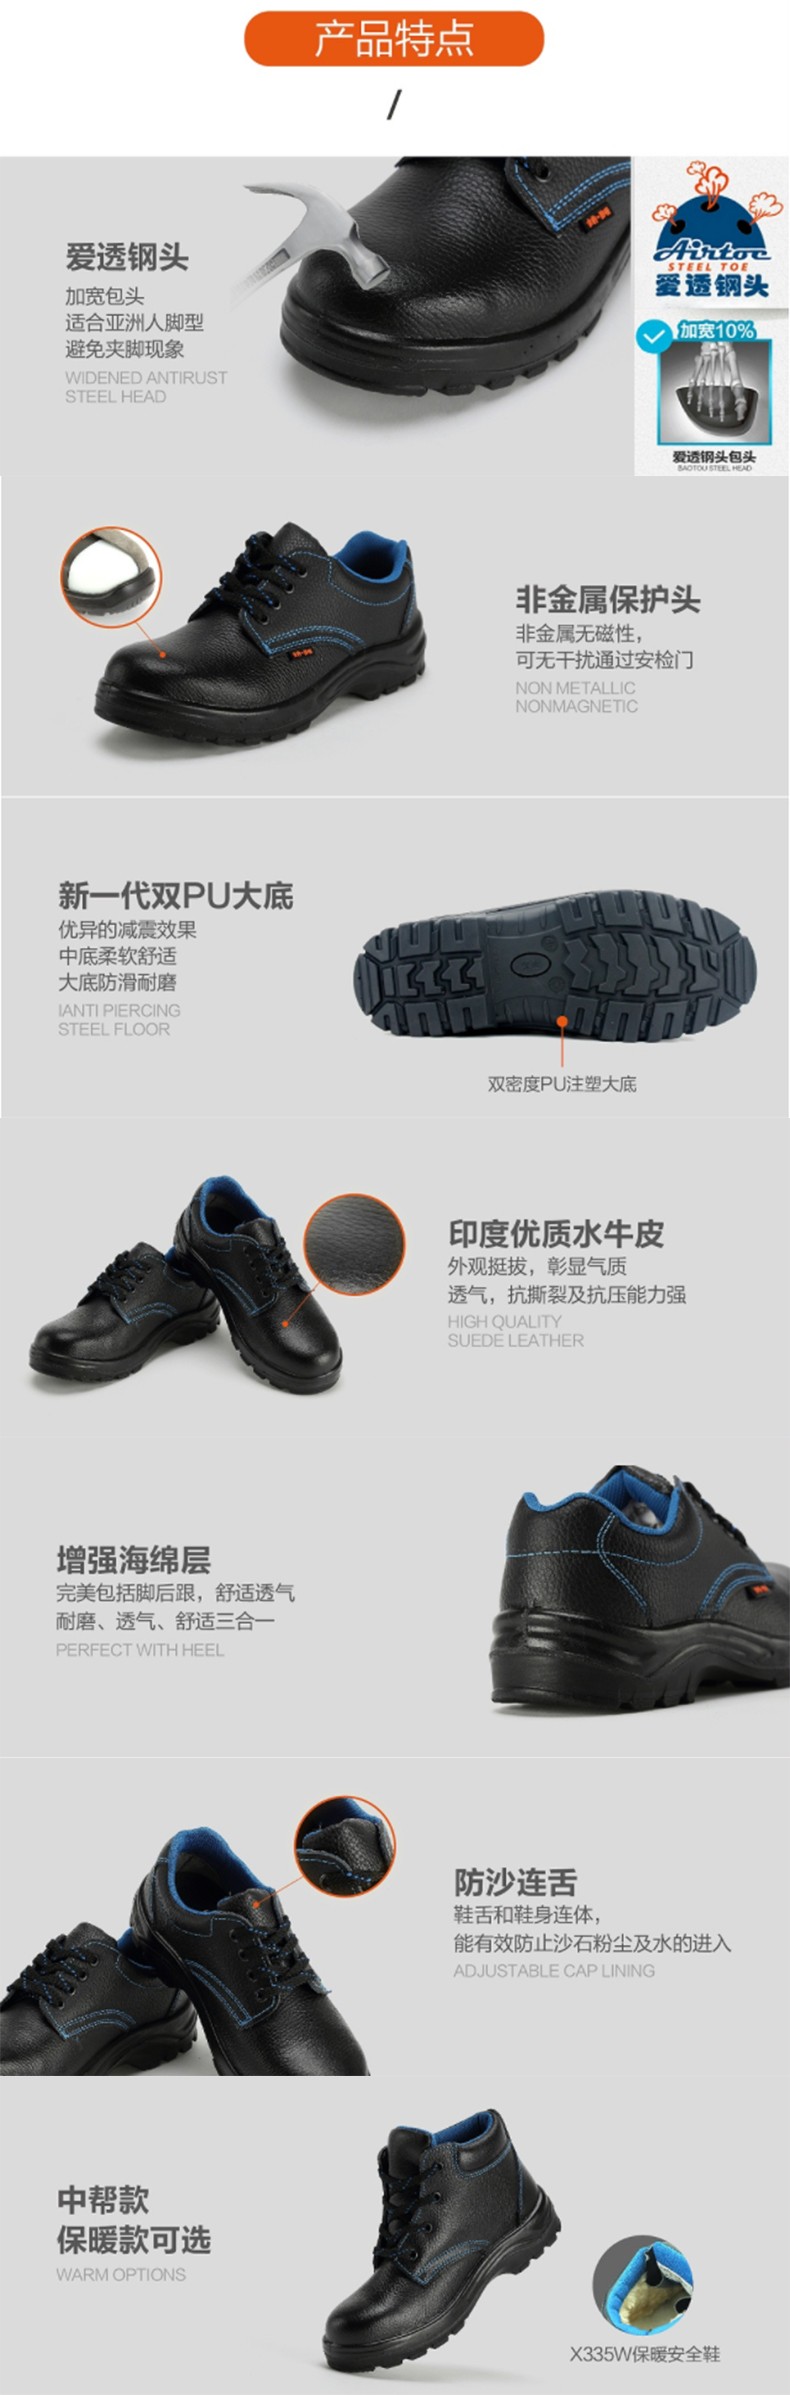 华信吉豹X335W中帮防砸保暖安全鞋图片3